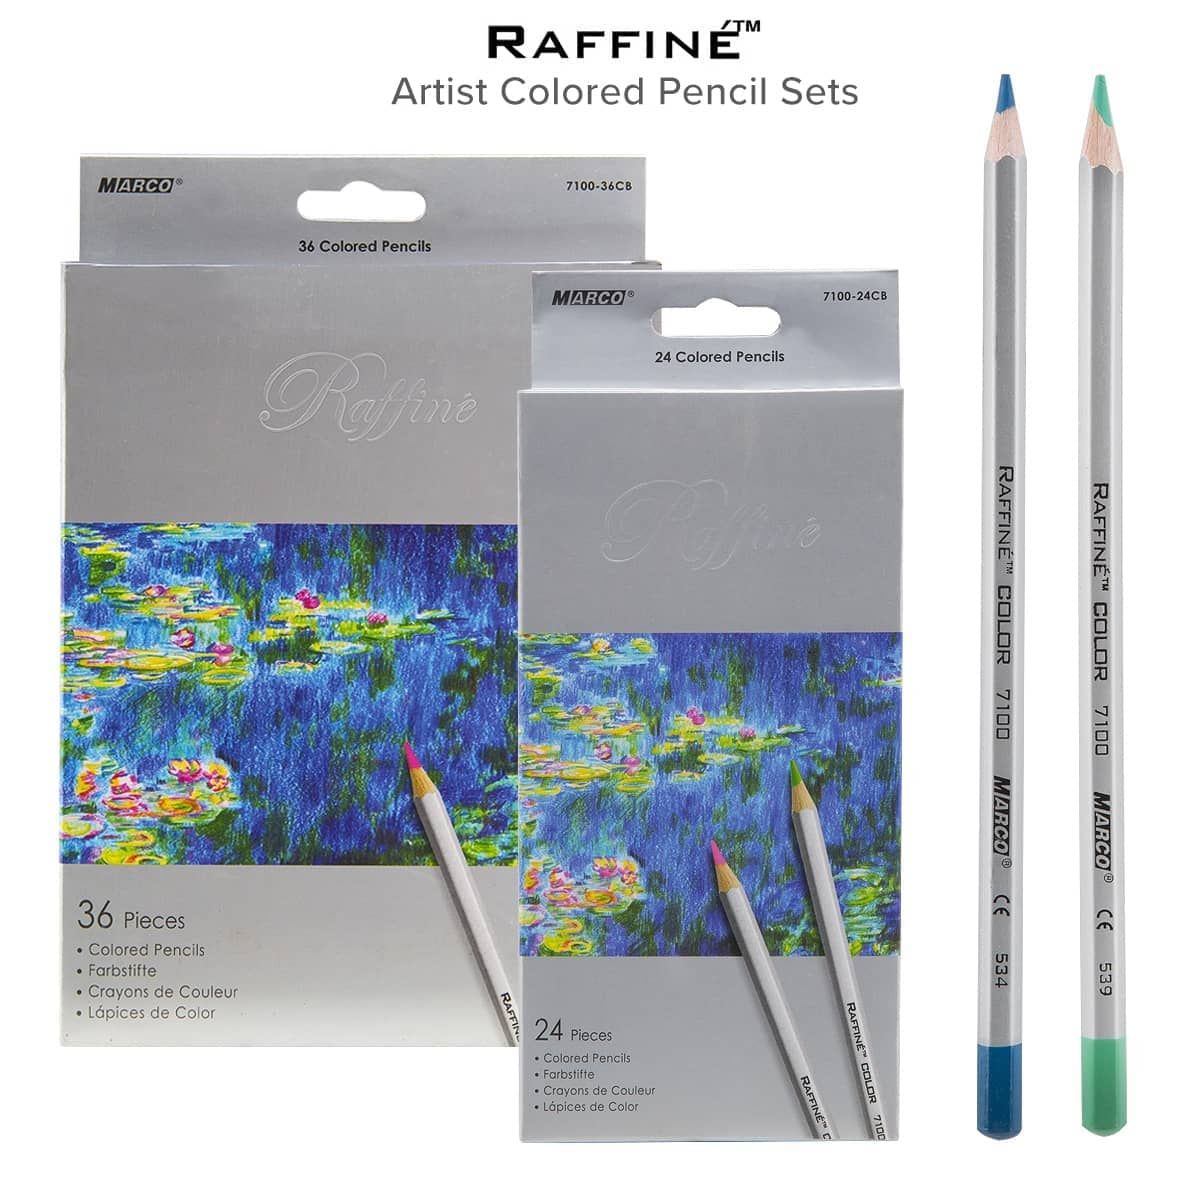 Fineliner Color Pen Set (HUGE SET OF 60 COLORING PENS) Colorful